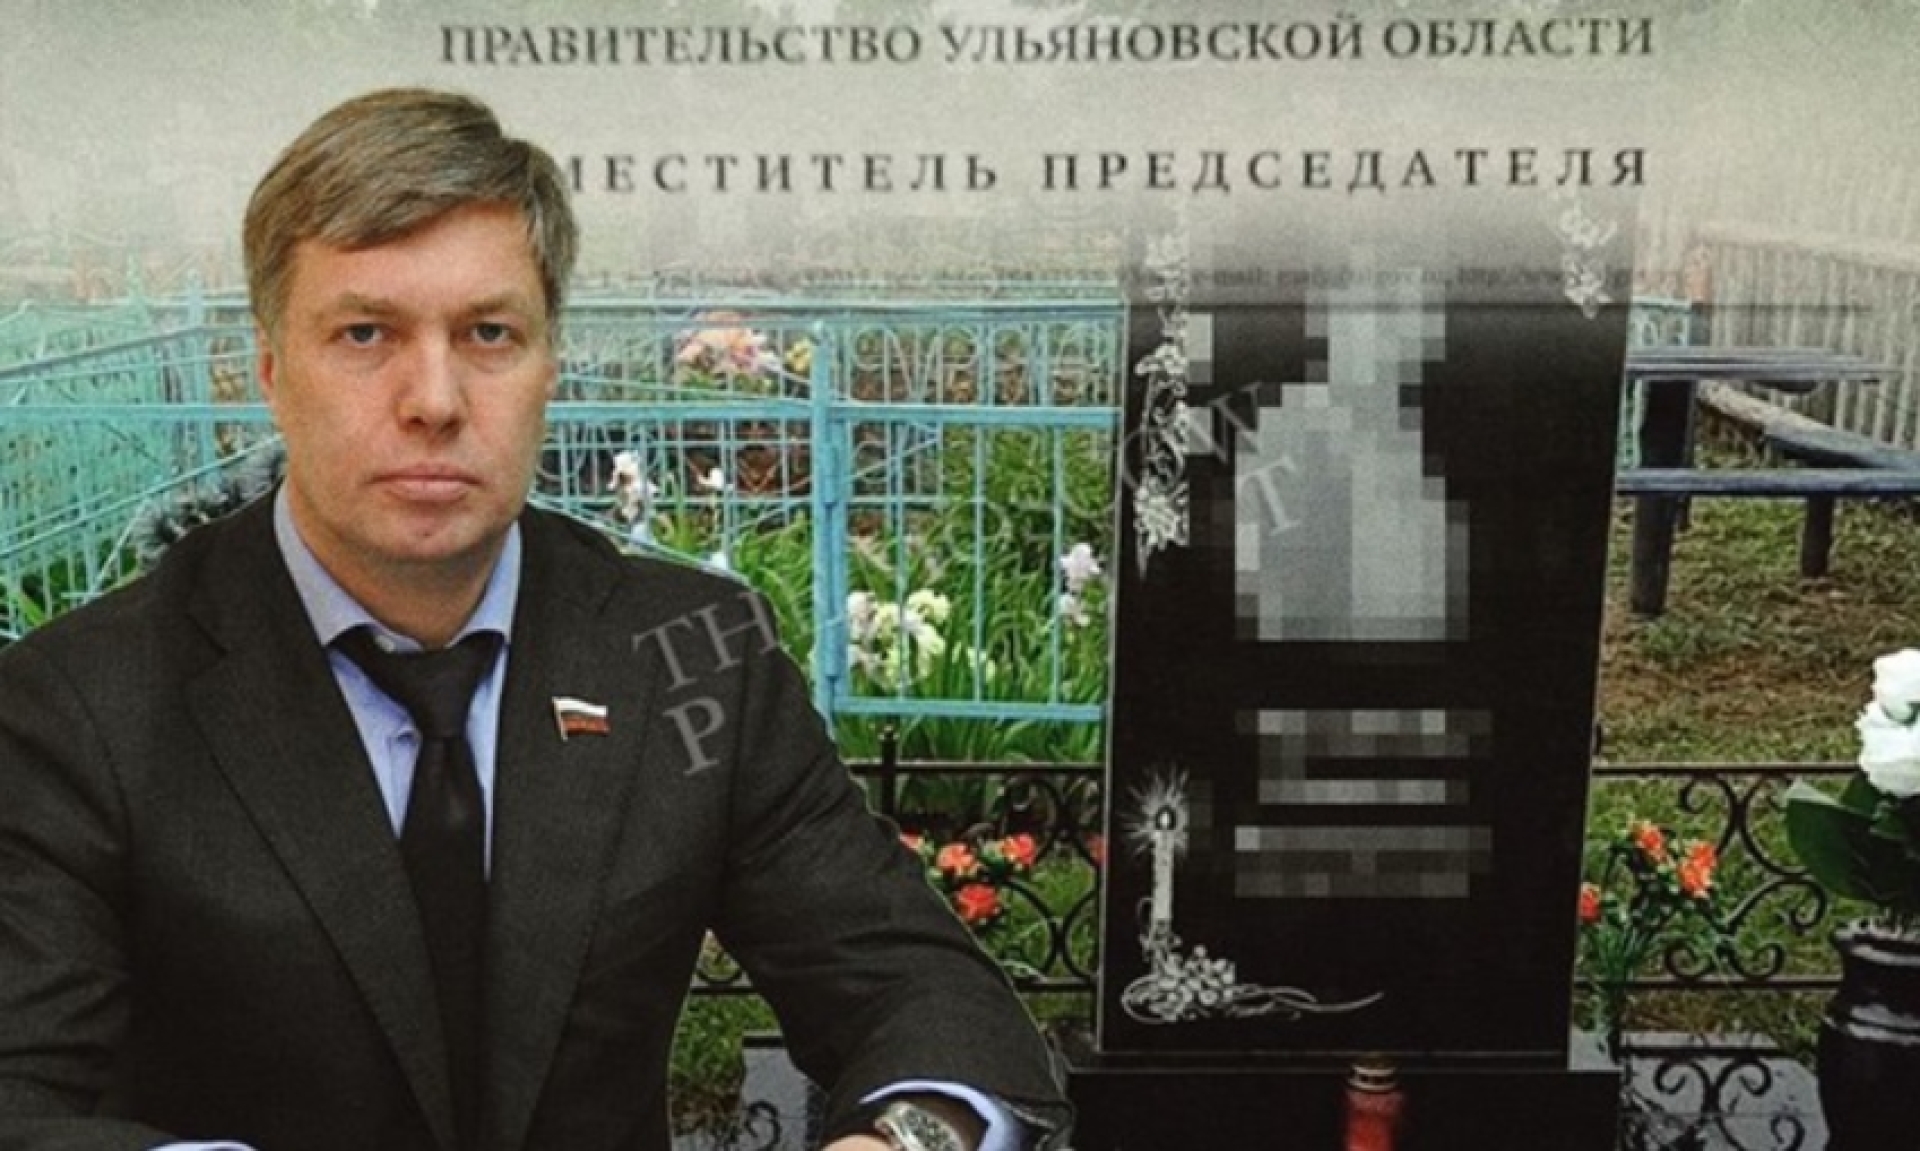 Затерянный могильник: в вотчине губернатора Русских проблемы с кладбищами